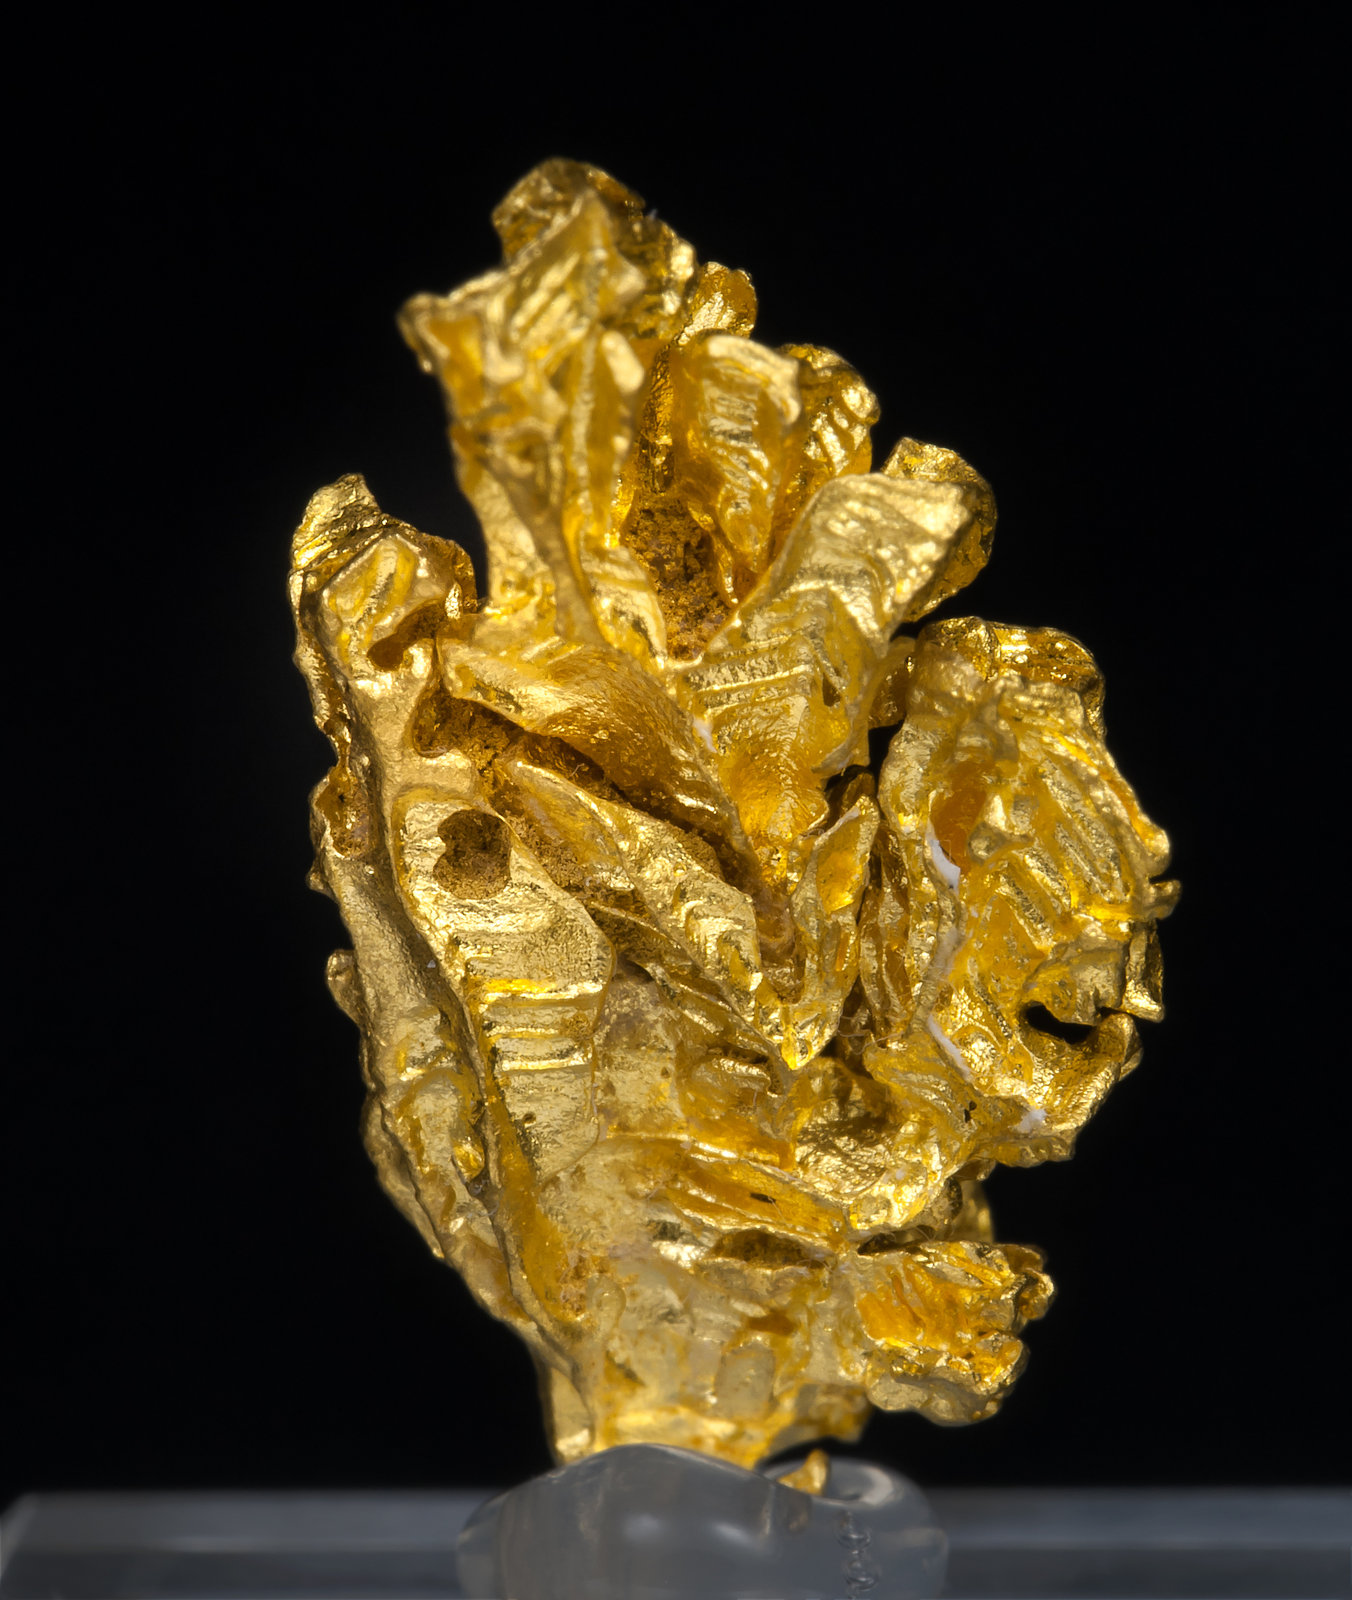 specimens/s_imagesAD3/Gold-TE12AD3r.jpg